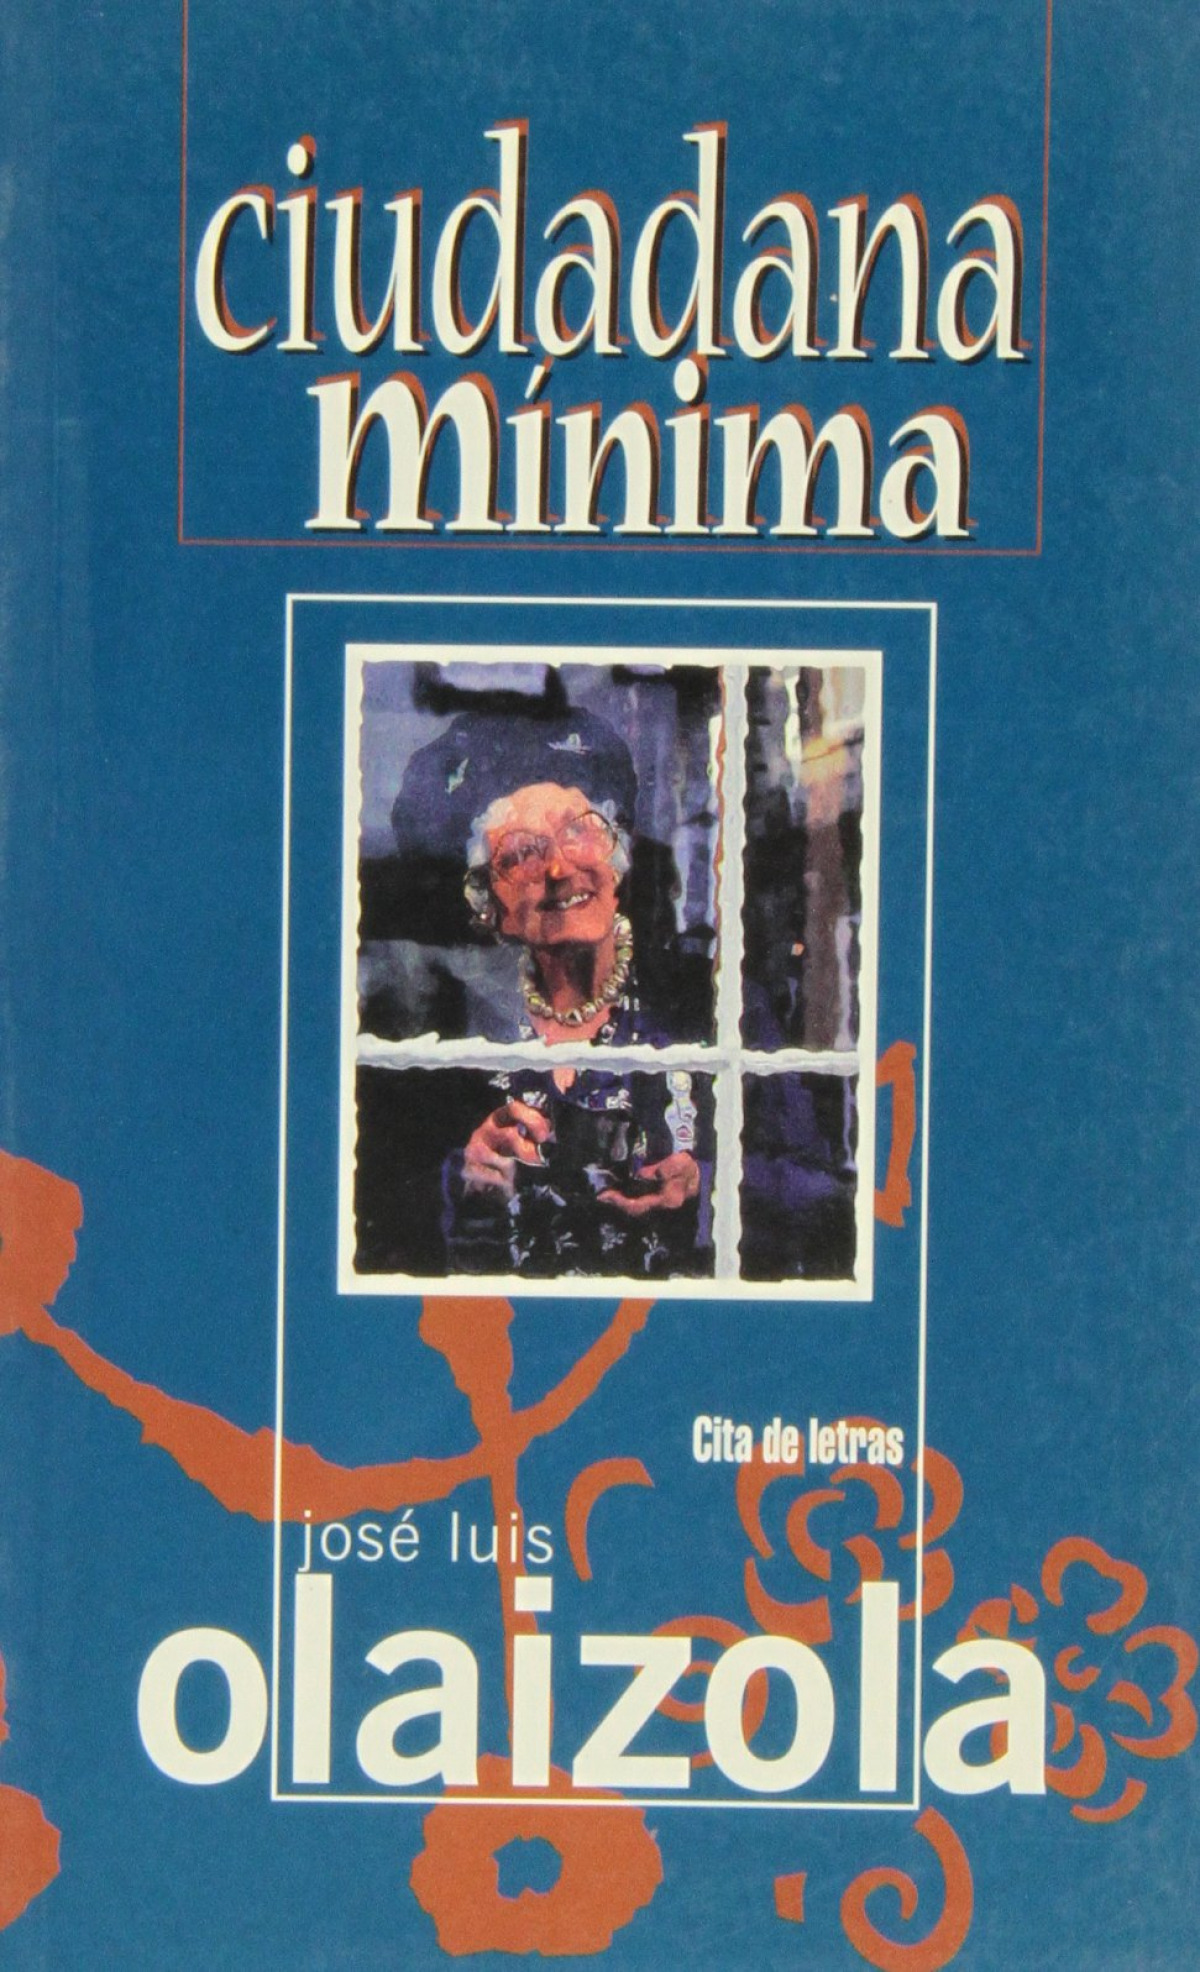 Ciudadana minima - Olaizola, Jose Luis